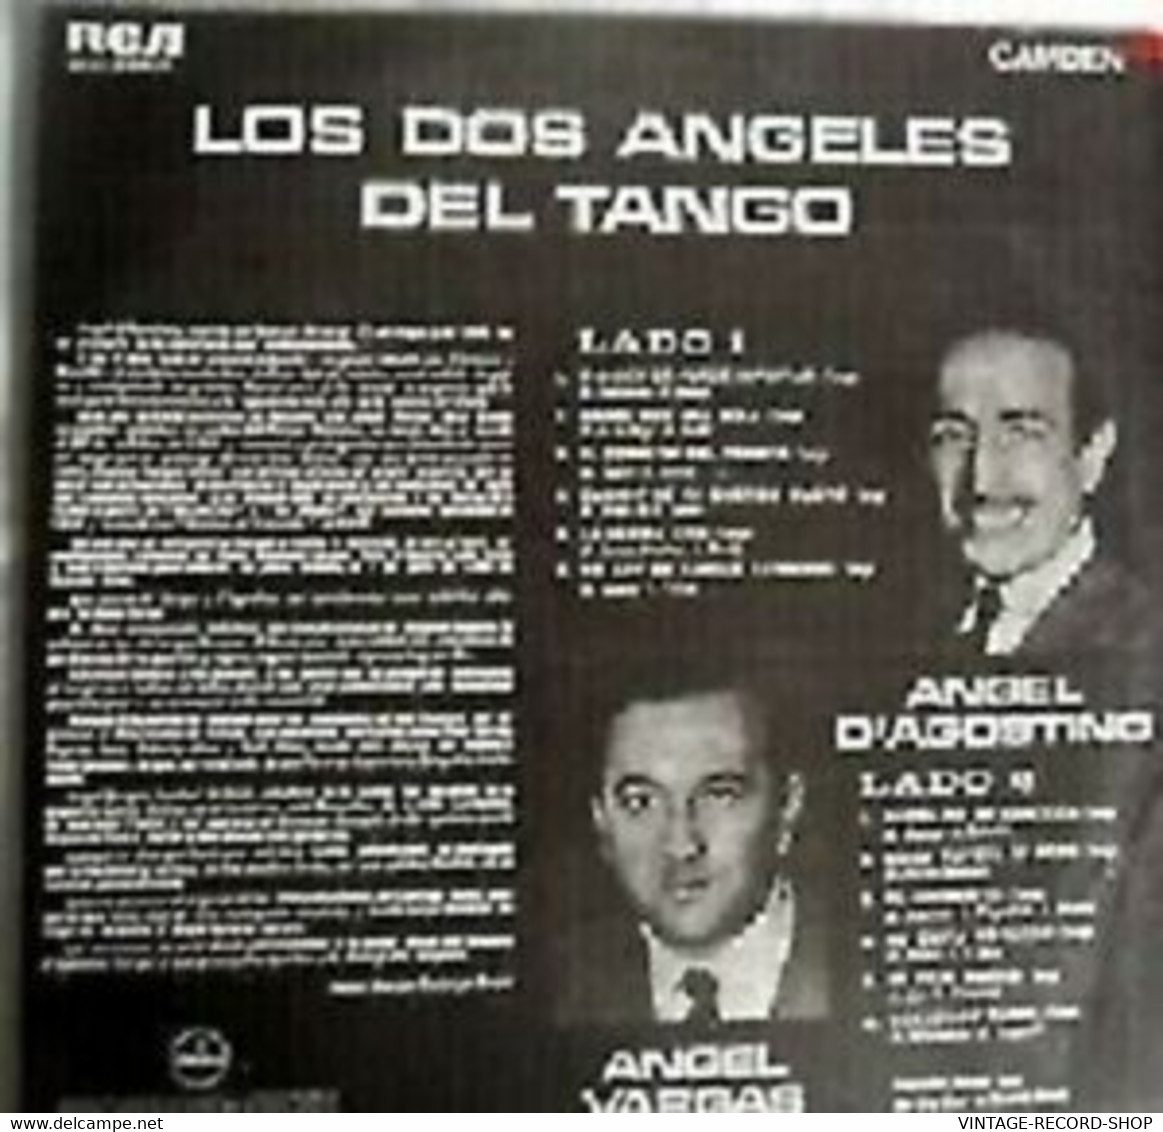 ANGEL DAGOSTINO ANGEL VARGAS-LOS DOS ANGELES DEL TANGO CAMDEN/RCA - Otros - Canción Española